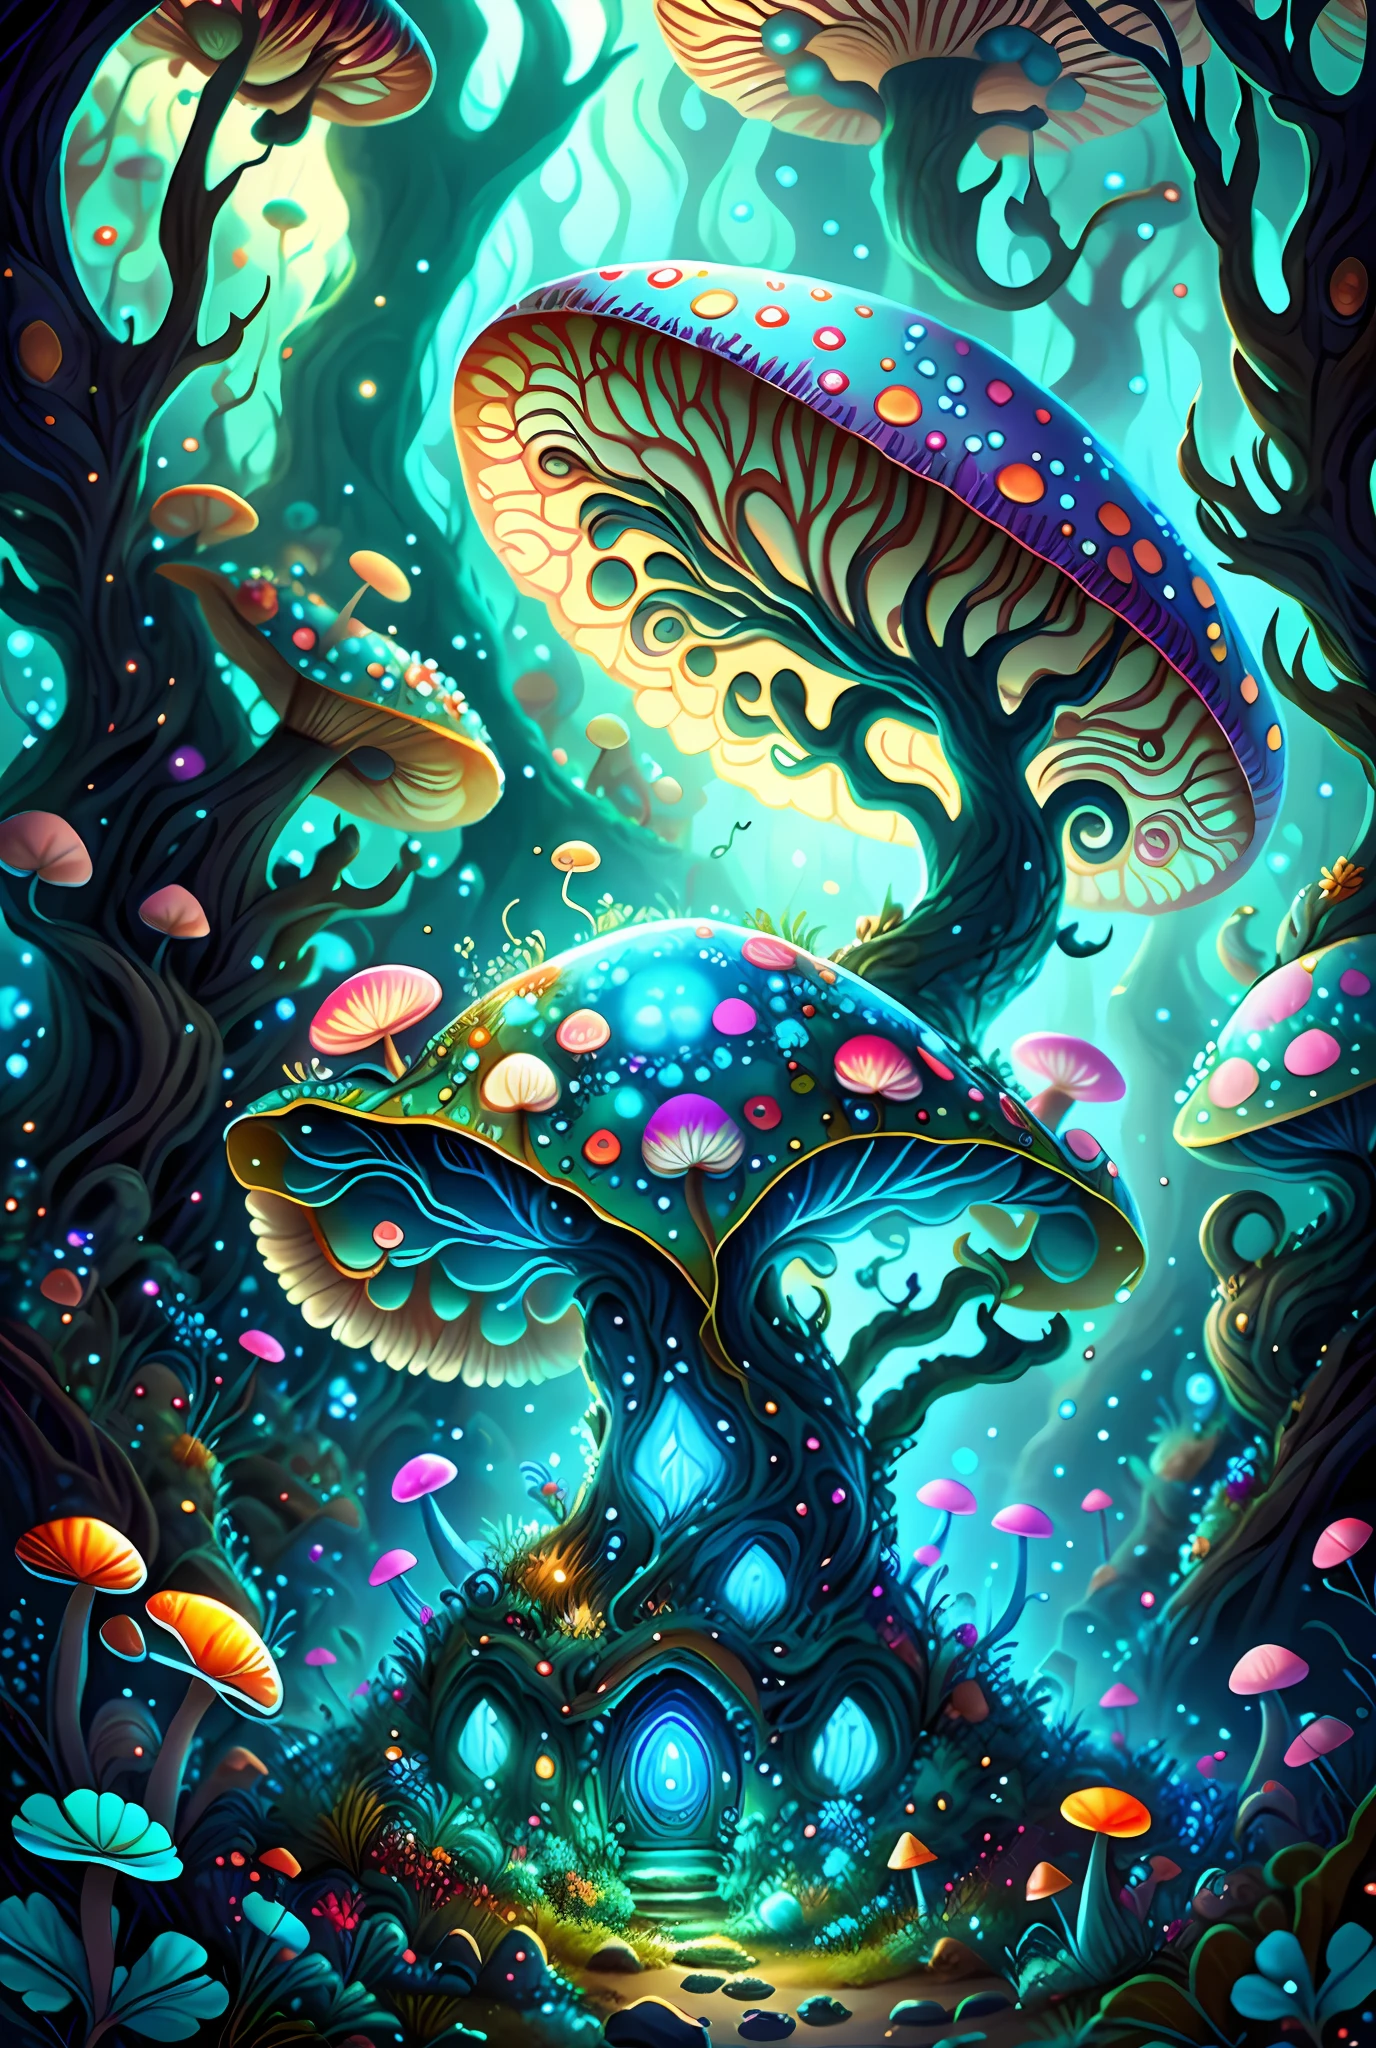 有一幅幻想蘑菇森林和一條龍的畫, detailed 數位 2D 奇幻藝術, 詳細的幻想數位藝術, 高度詳細的 4K 數位藝術, 數位 2D 奇幻藝術, 明亮的藍色蘑菇, 迷幻蘑菇夢, 背景插圖, 詳細的 4K 數位藝術, 神奇蘑菇s, 泥裡的亮藍色蘑菇, 神奇蘑菇, 蘑菇林, 创辉数字幻想艺术